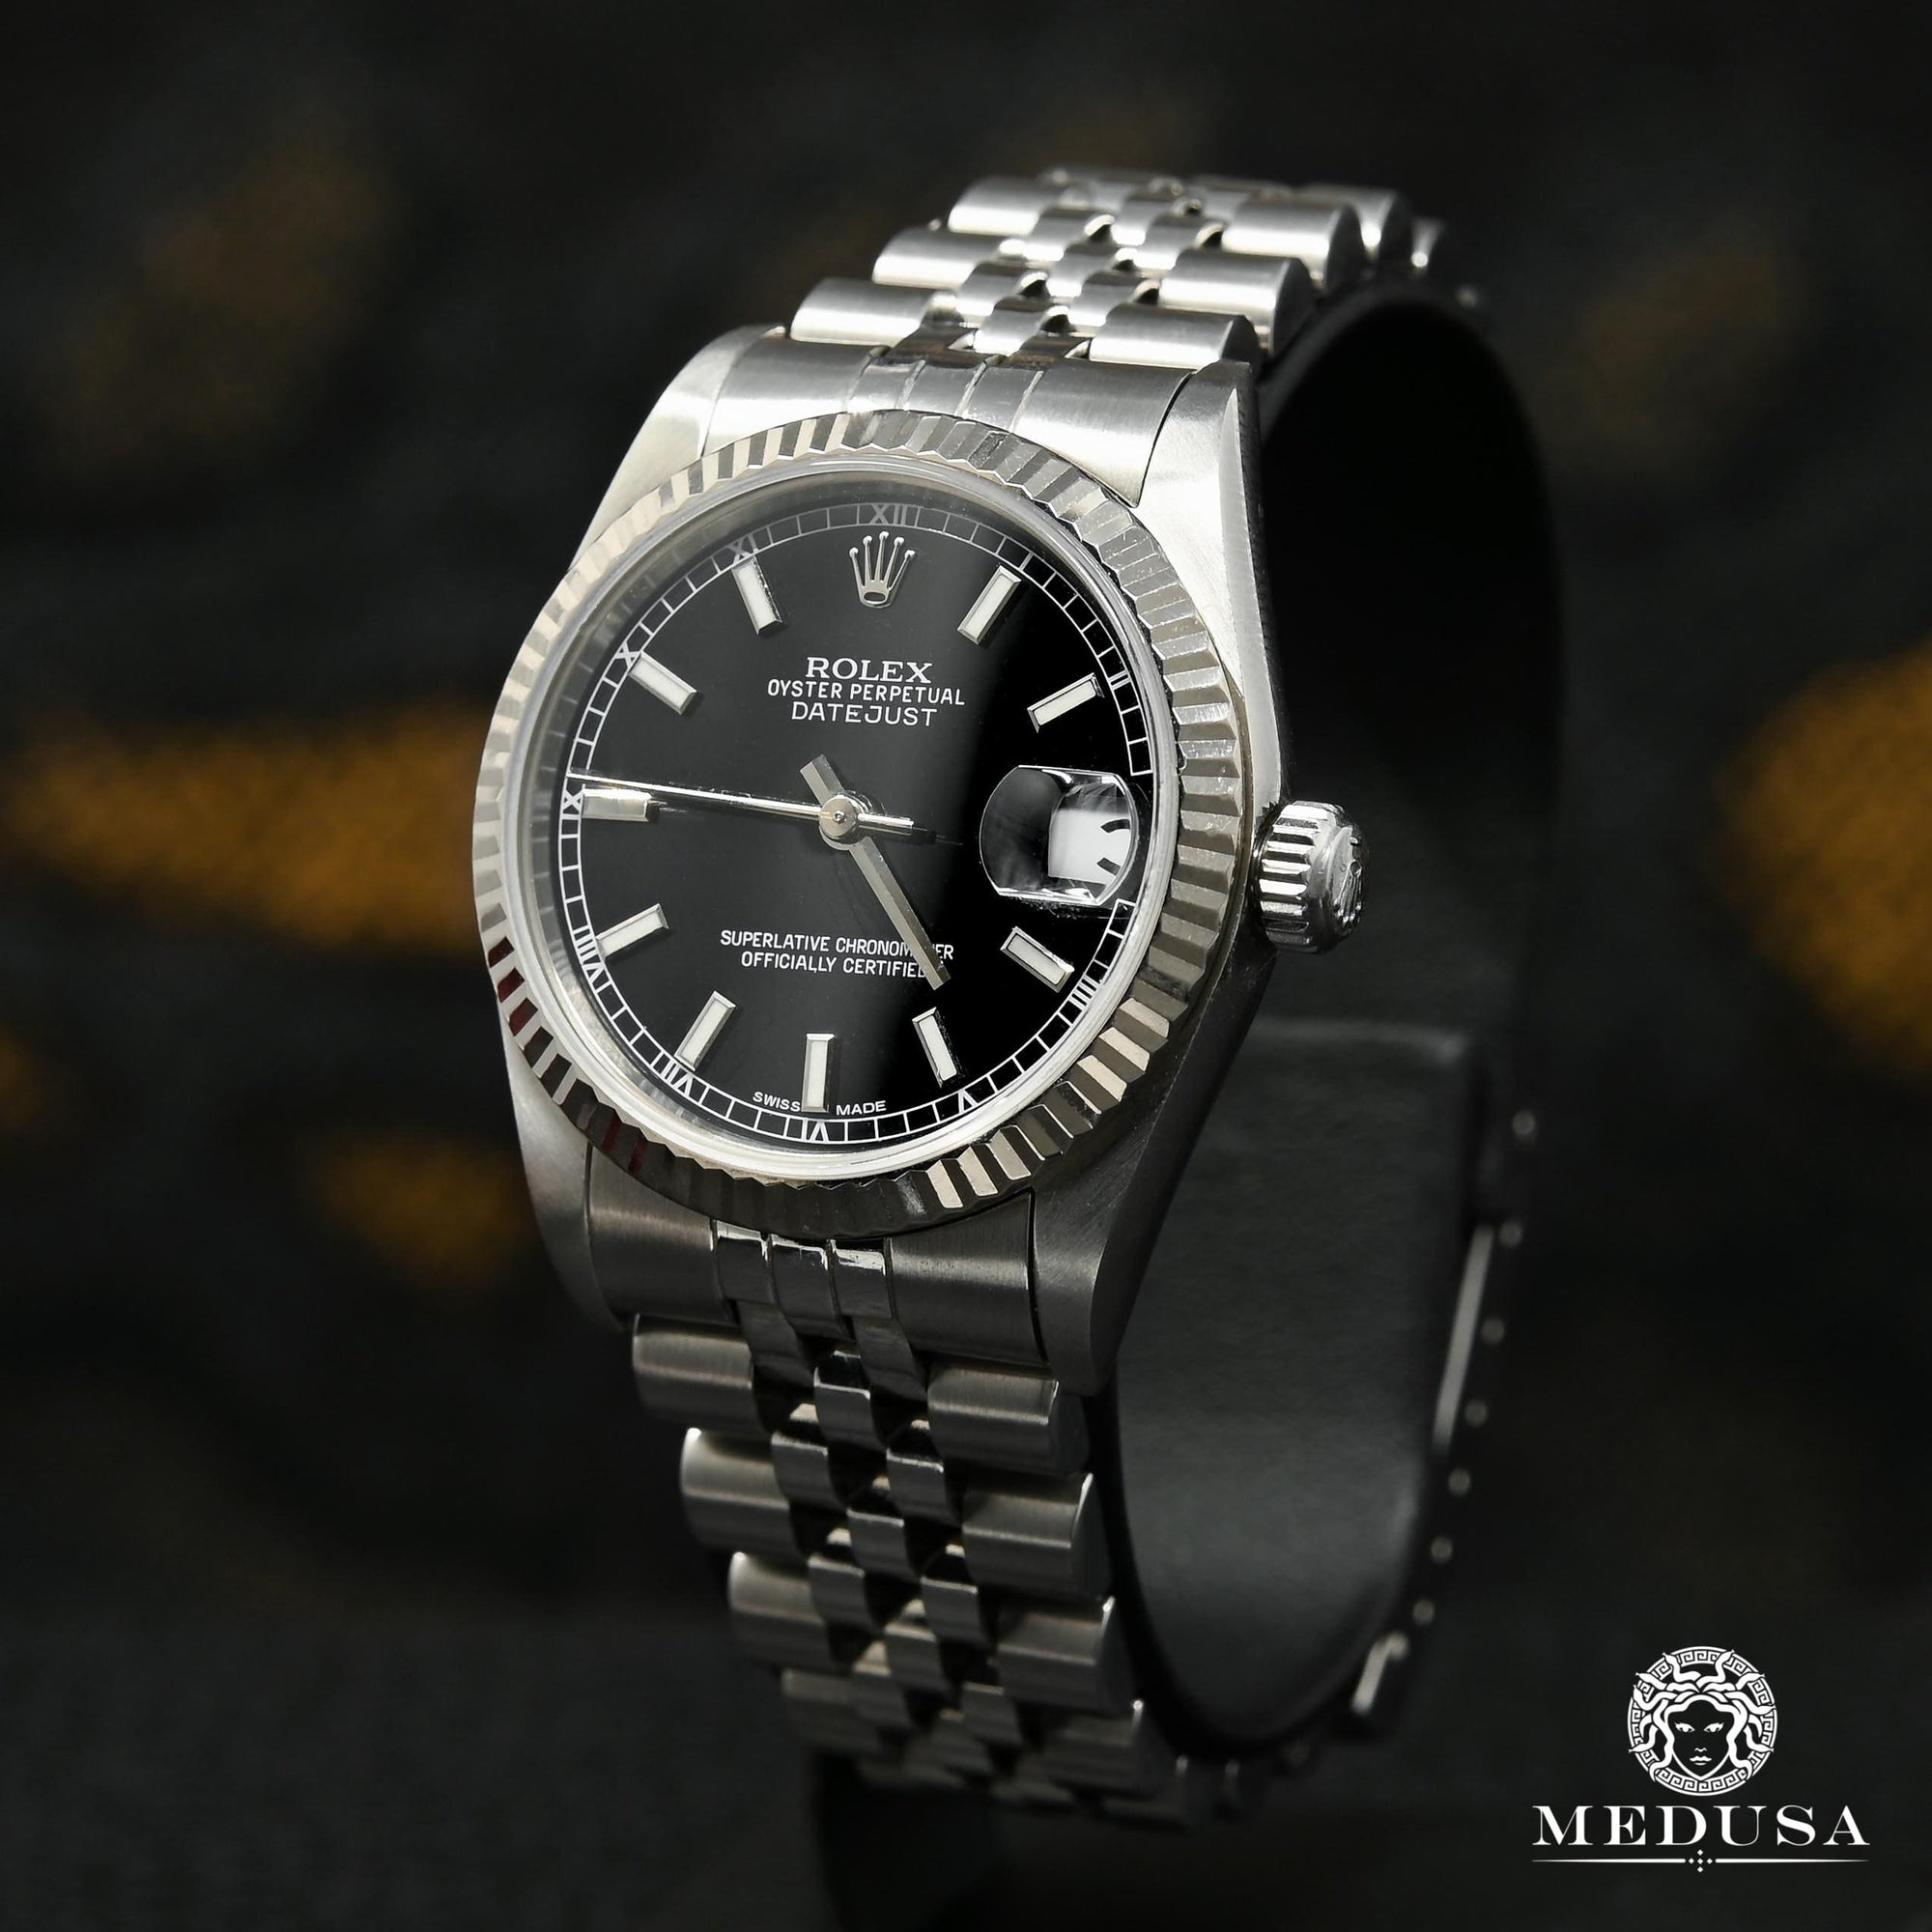 Rolex watch | Rolex Datejust 31mm Women's Watch - Black Stainless Steel